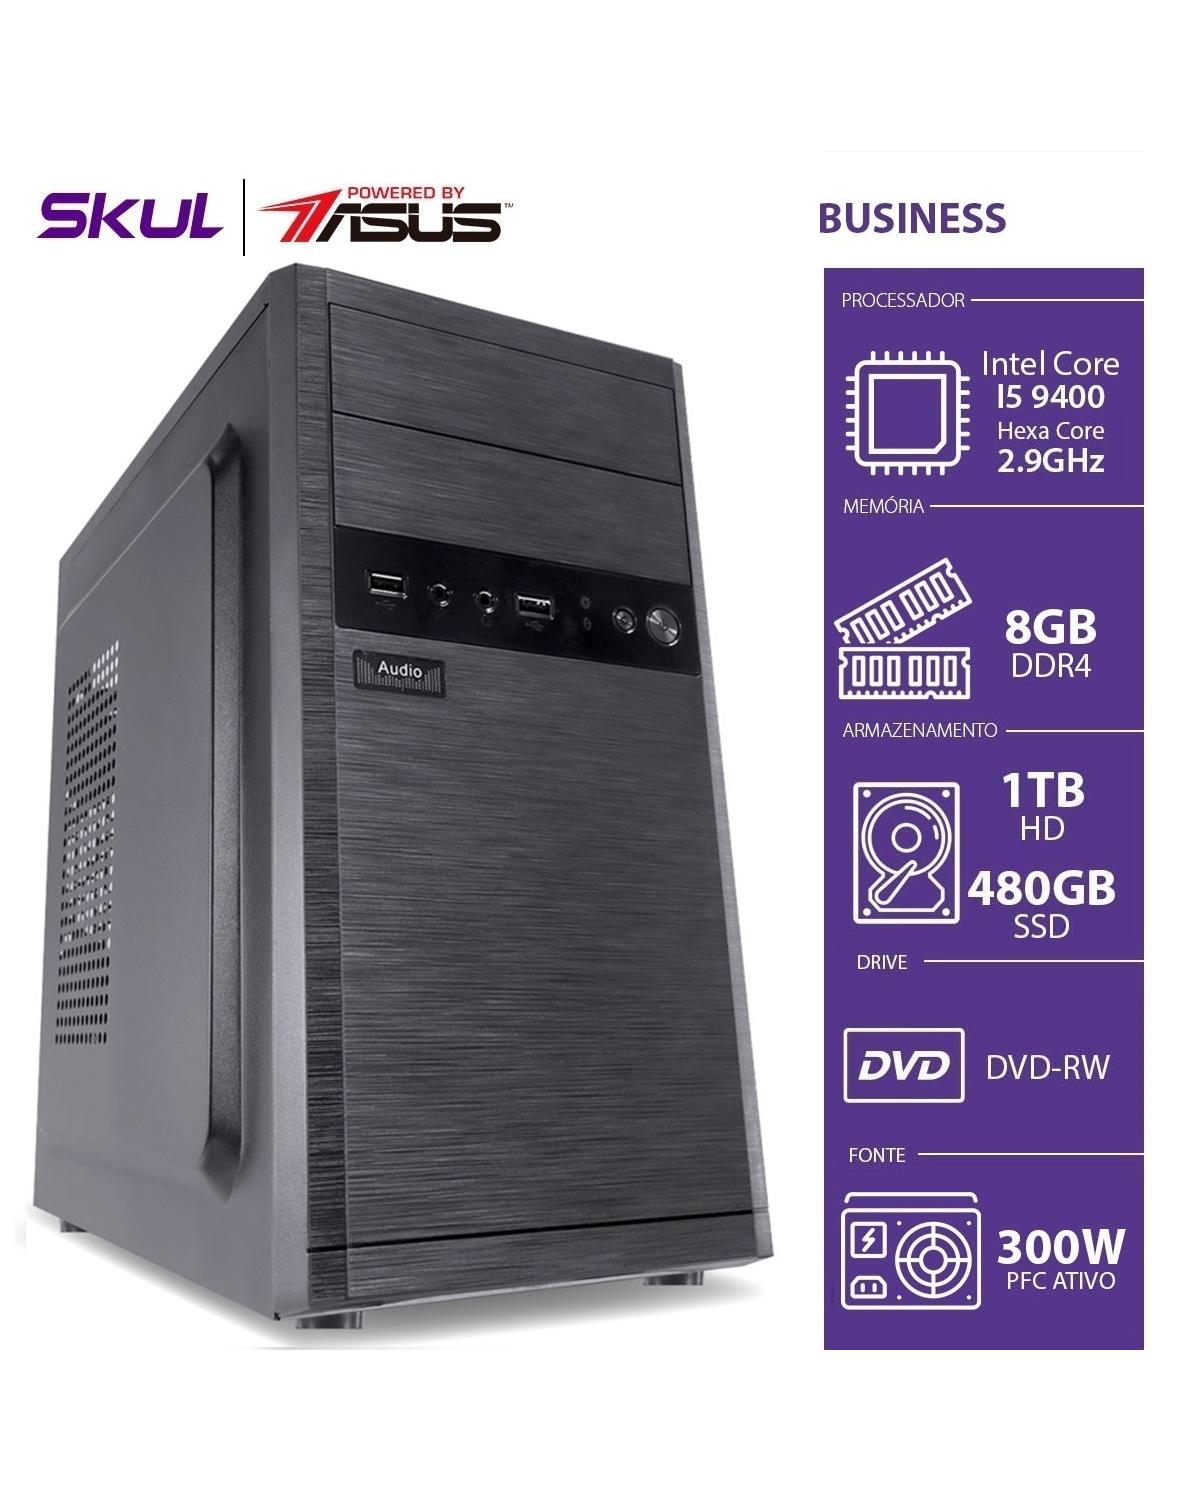 COMPUTADOR BUSINESS B500 POWERED BY ASUS - I5 9400 2.9GHZ MEM 8GB DDR4 SSD 480GB HD 1TB DVD-RW FONTE 250W